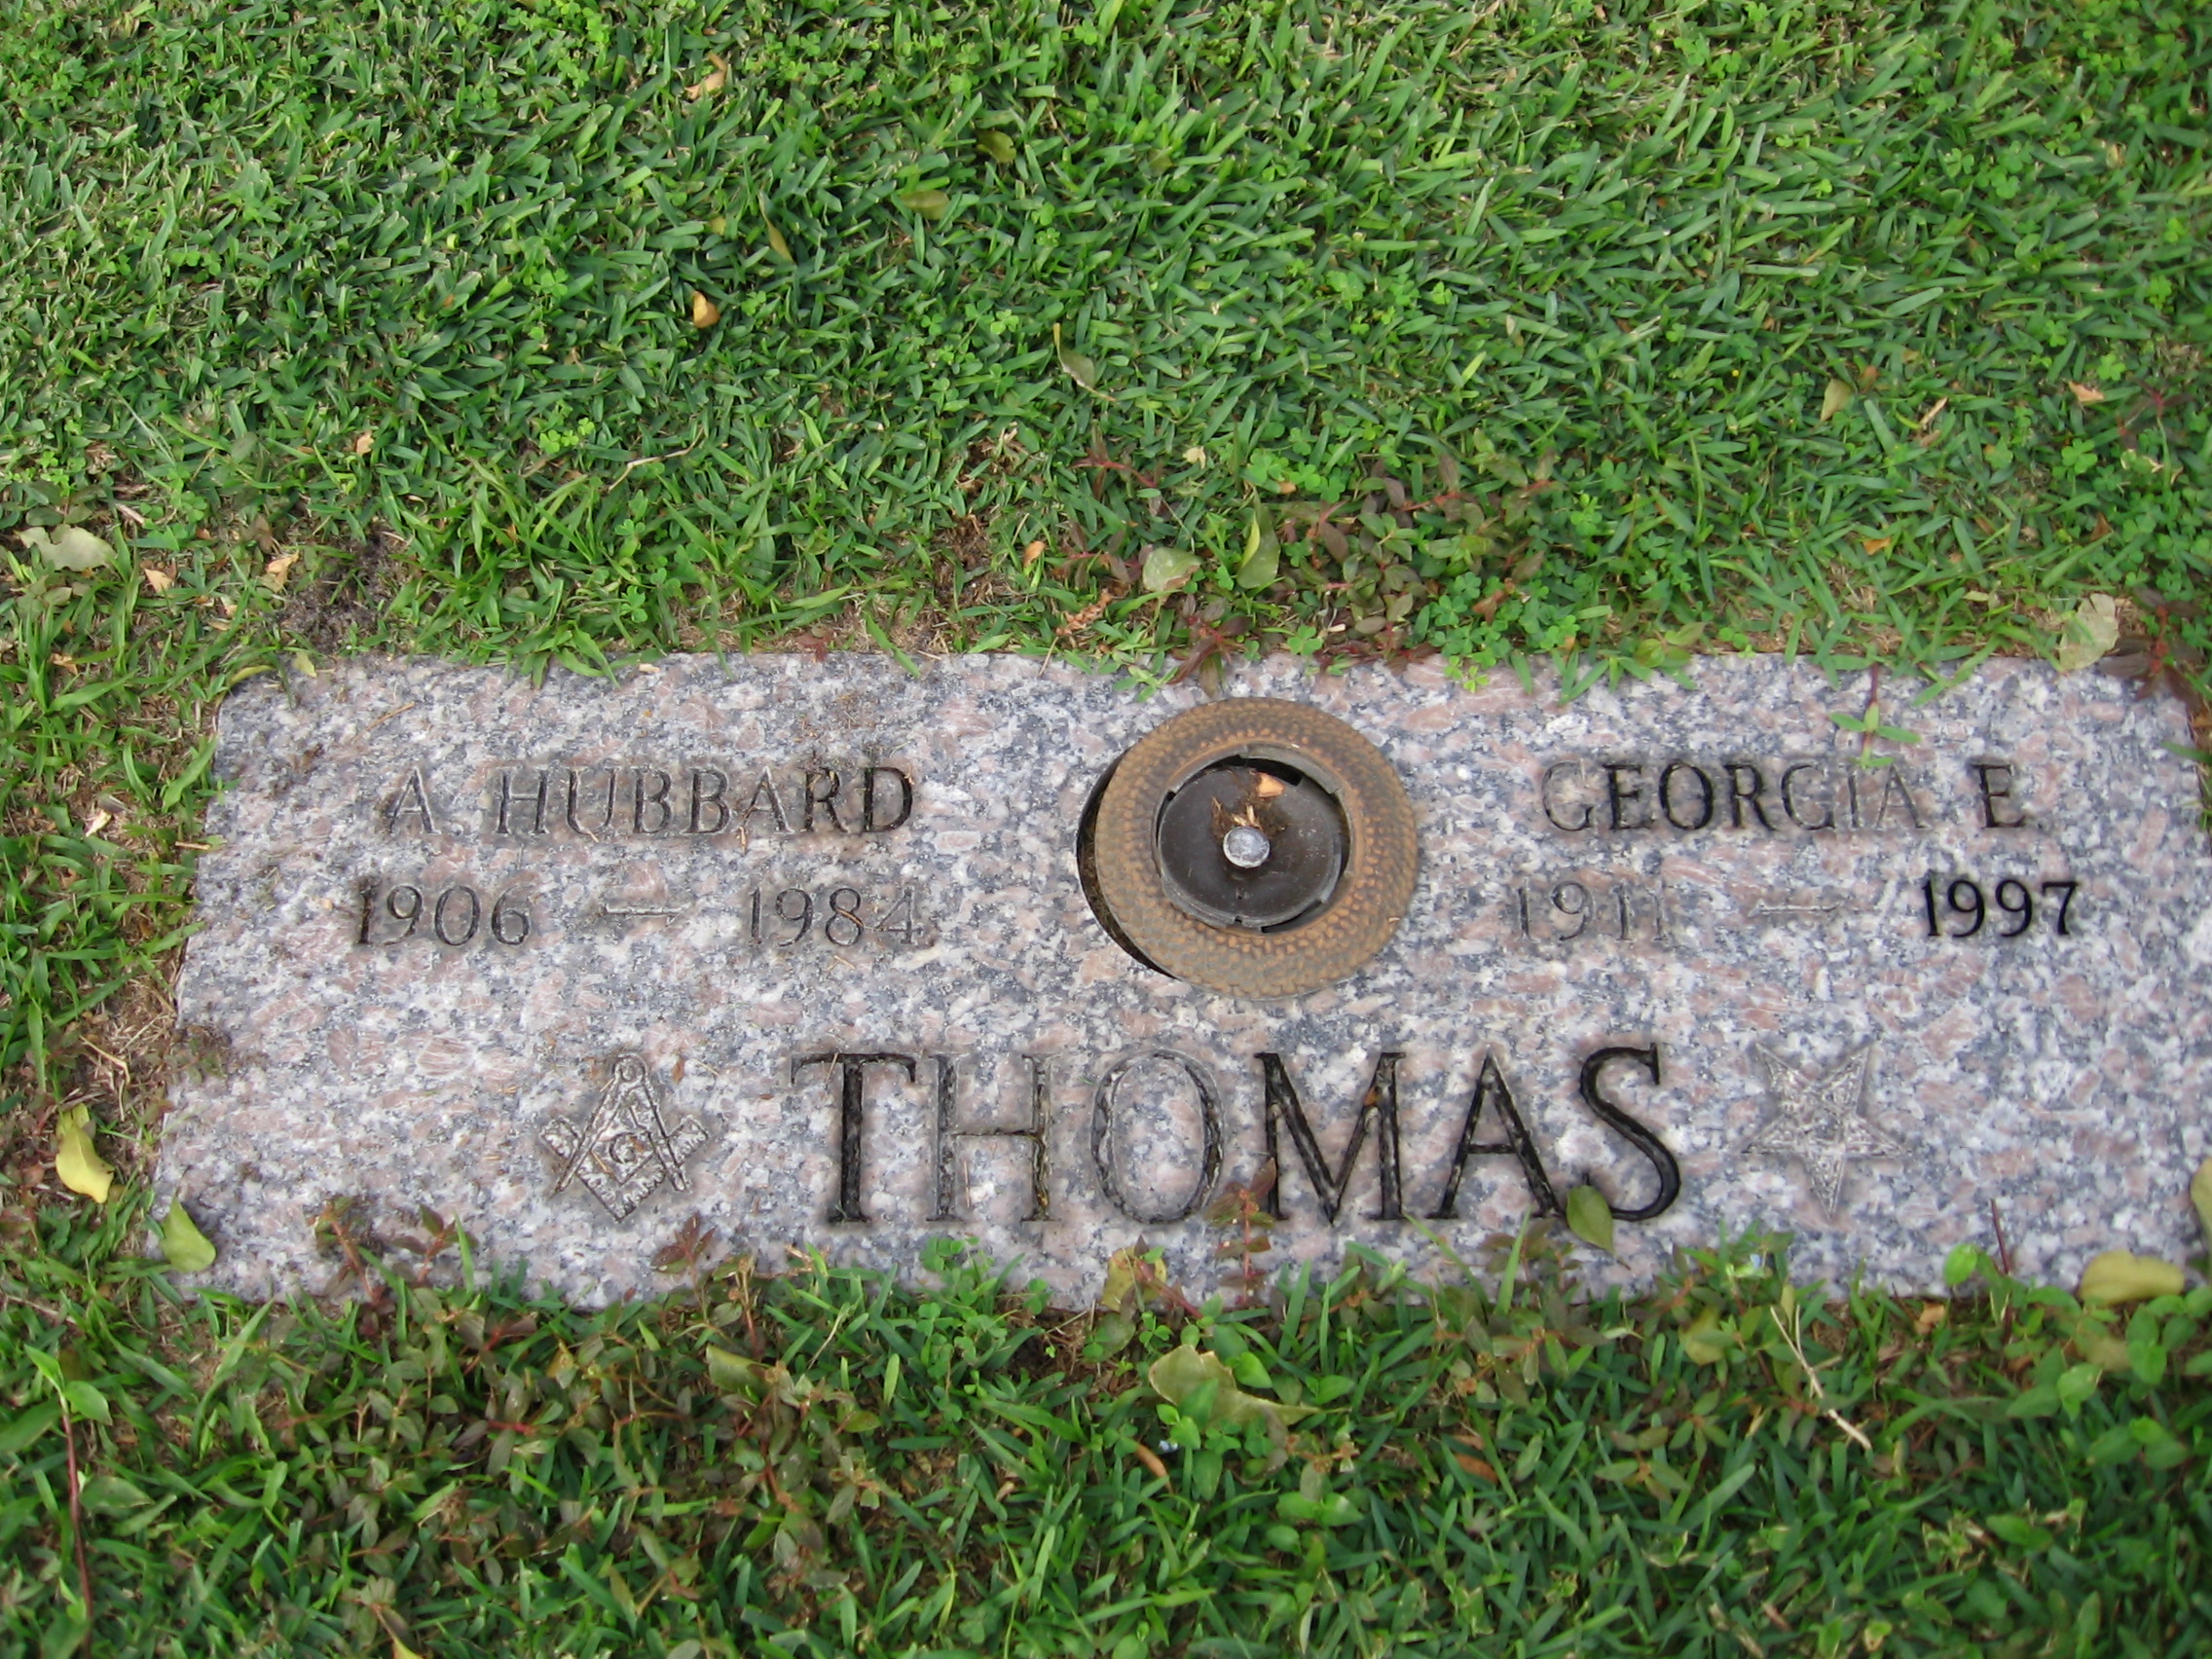 A Hubbard Thomas